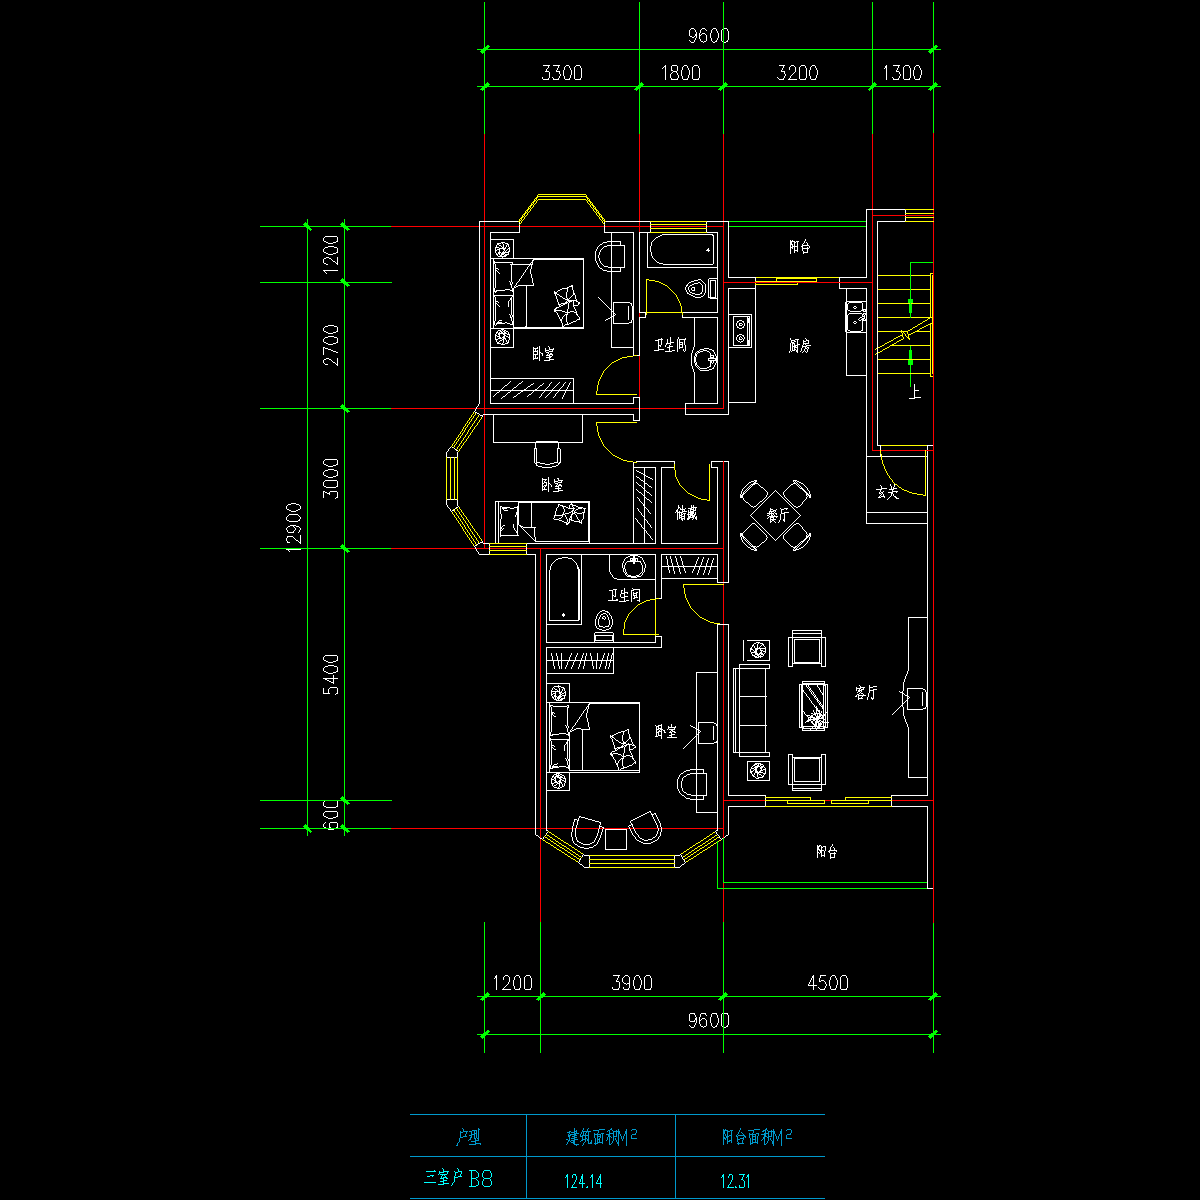 板式高层三室一厅单户户型CAD图纸(124)